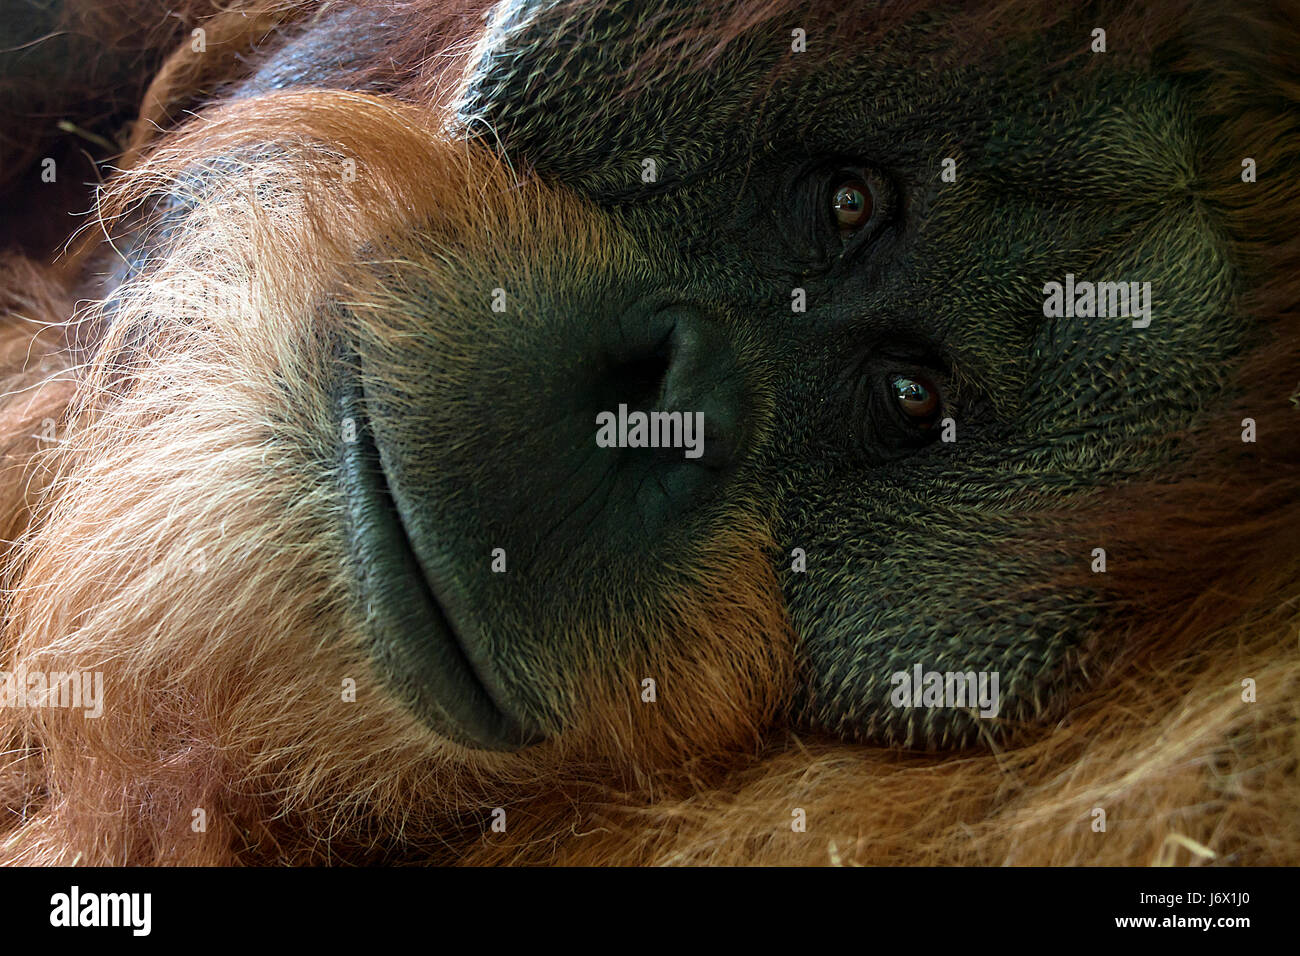 orangutan Stock Photo